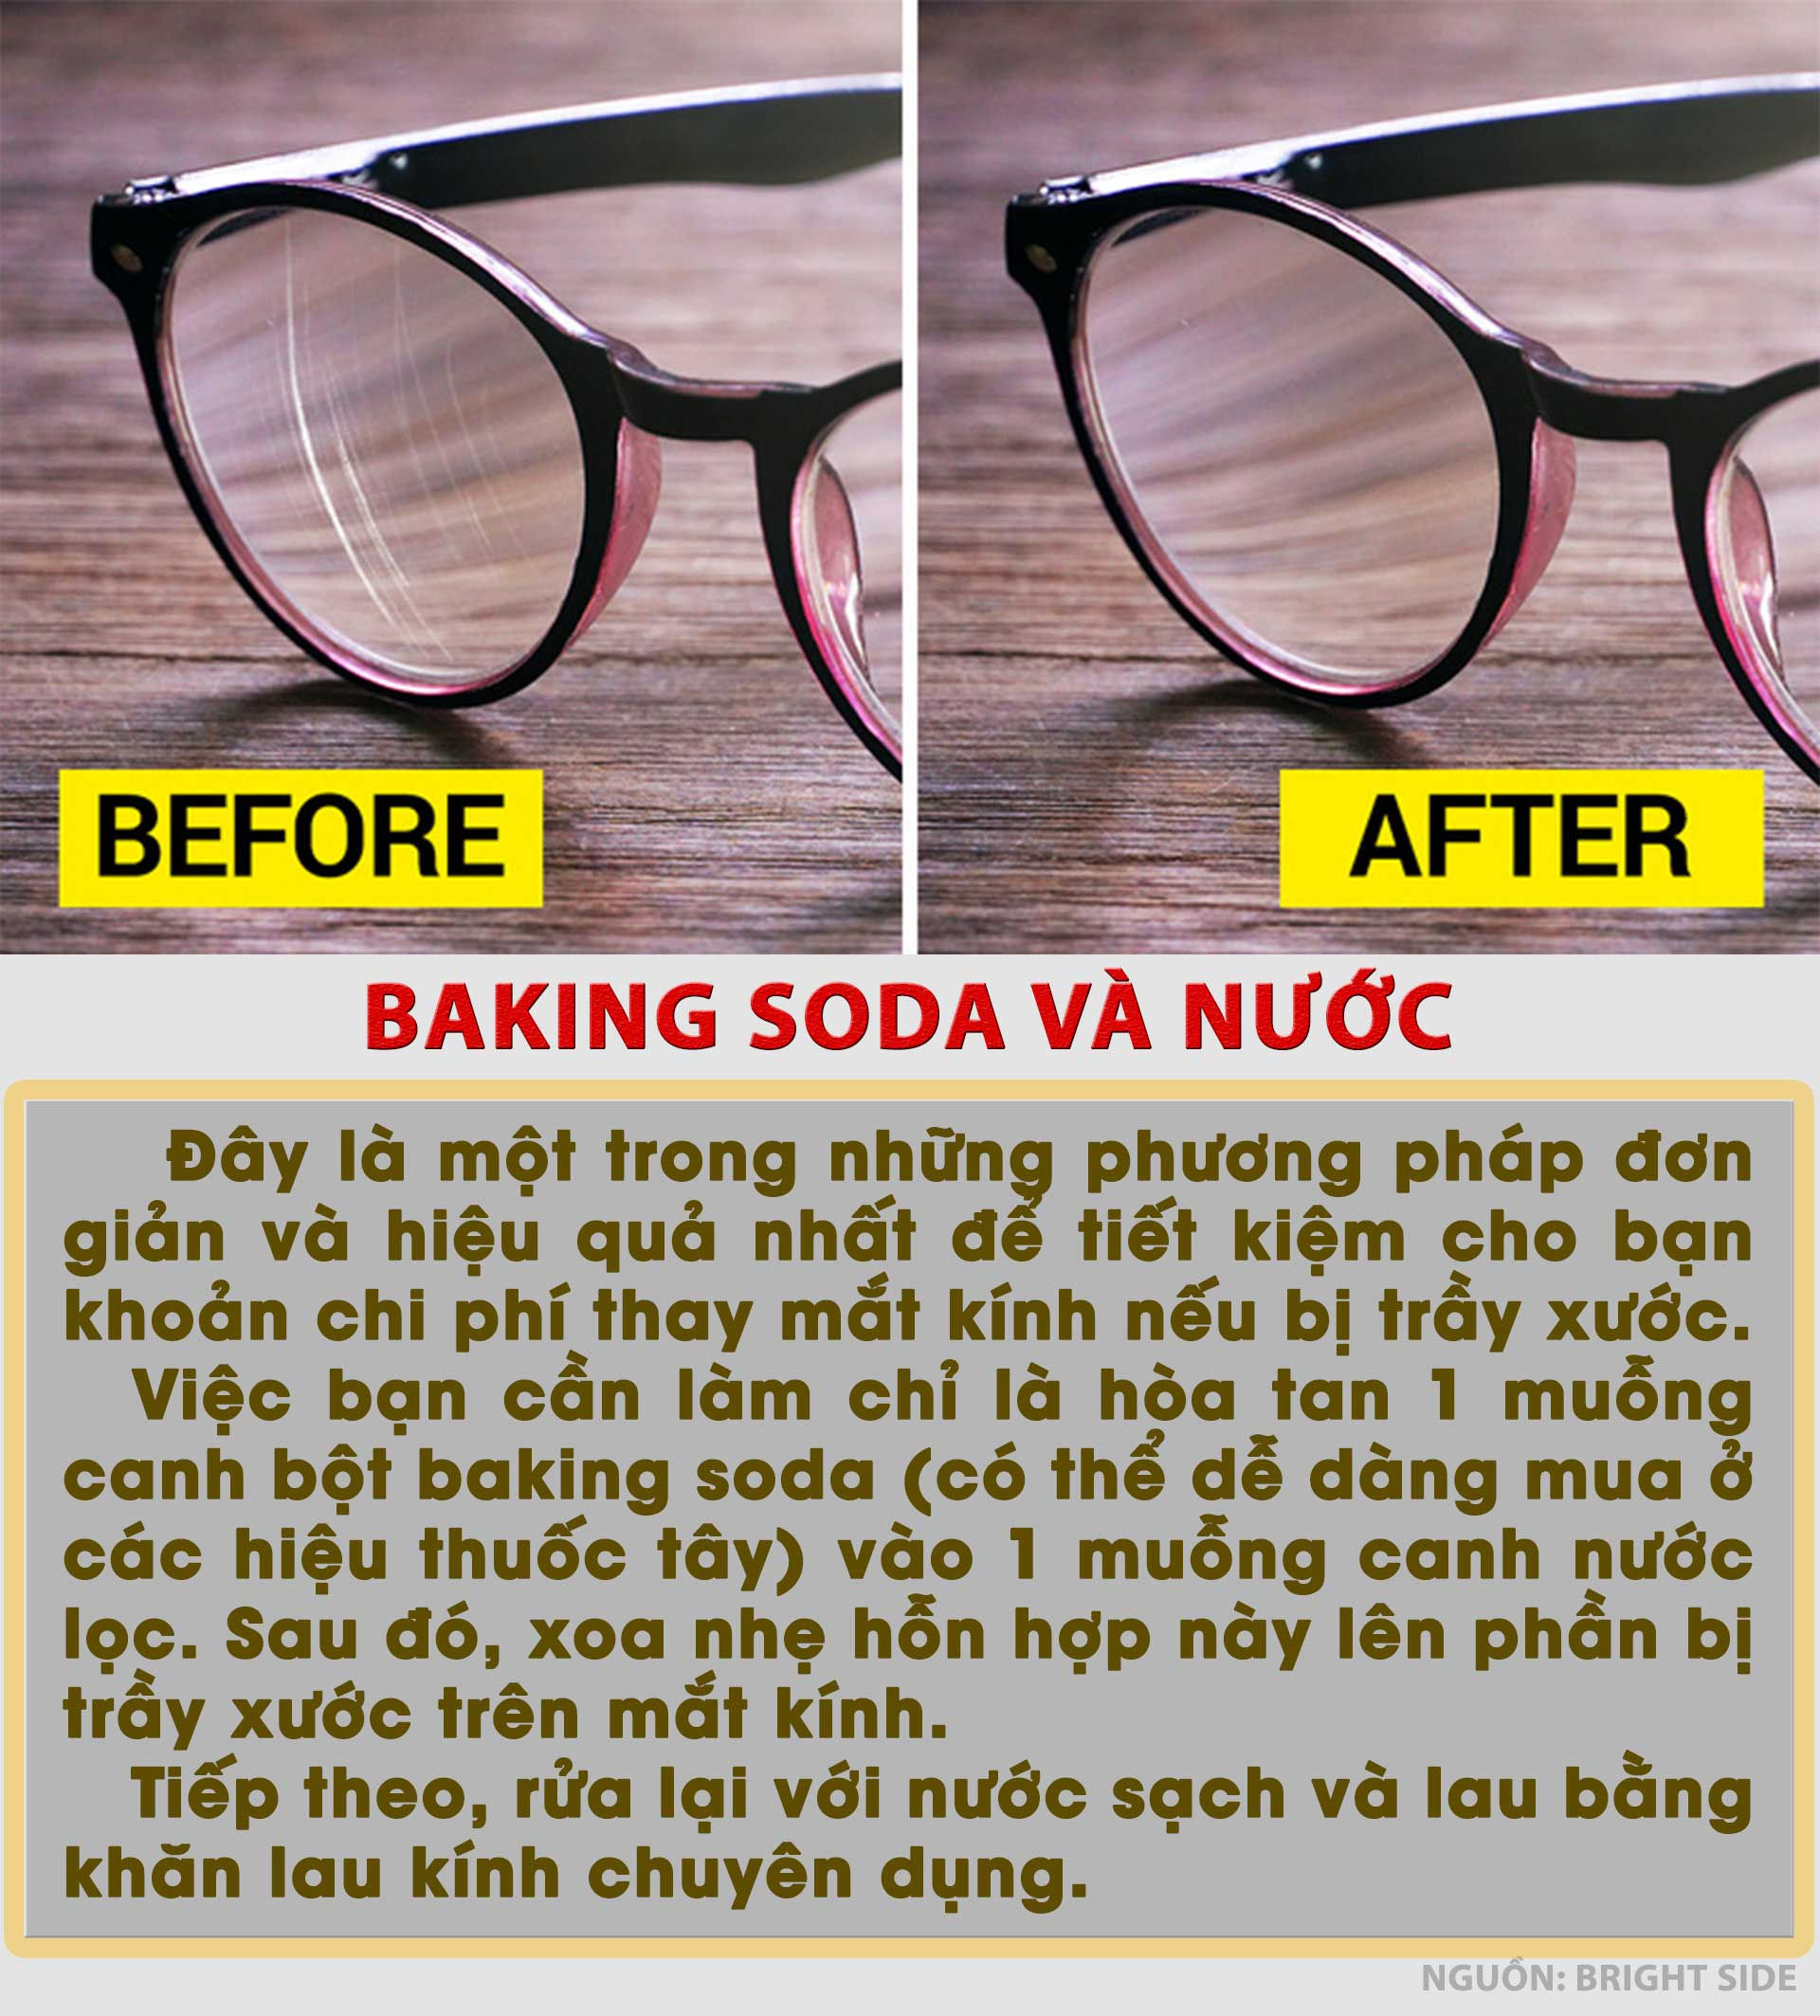 Đừng bỏ mắt kính cũ đi, đây là cách để làm mới chúng một cách nhanh chóng